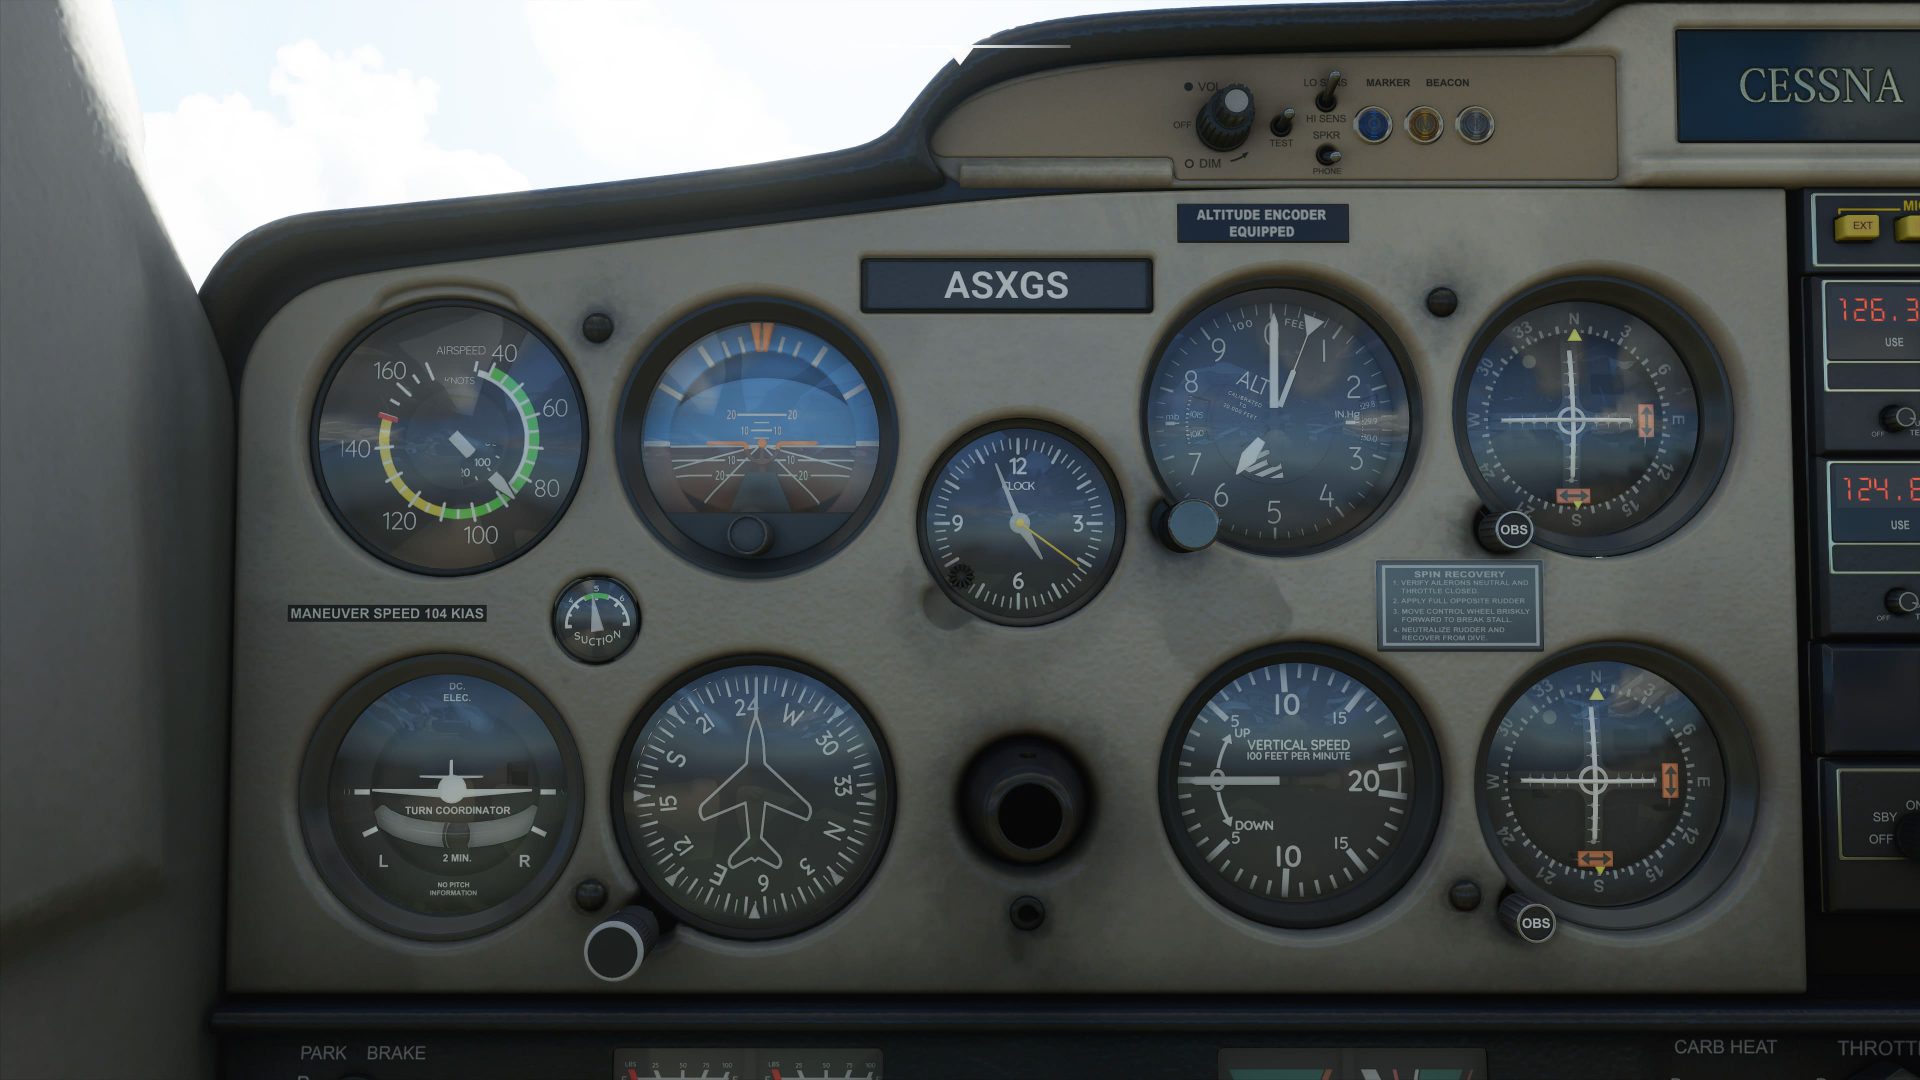 Análisis Microsoft Flight Simulator, el poder de las nubes